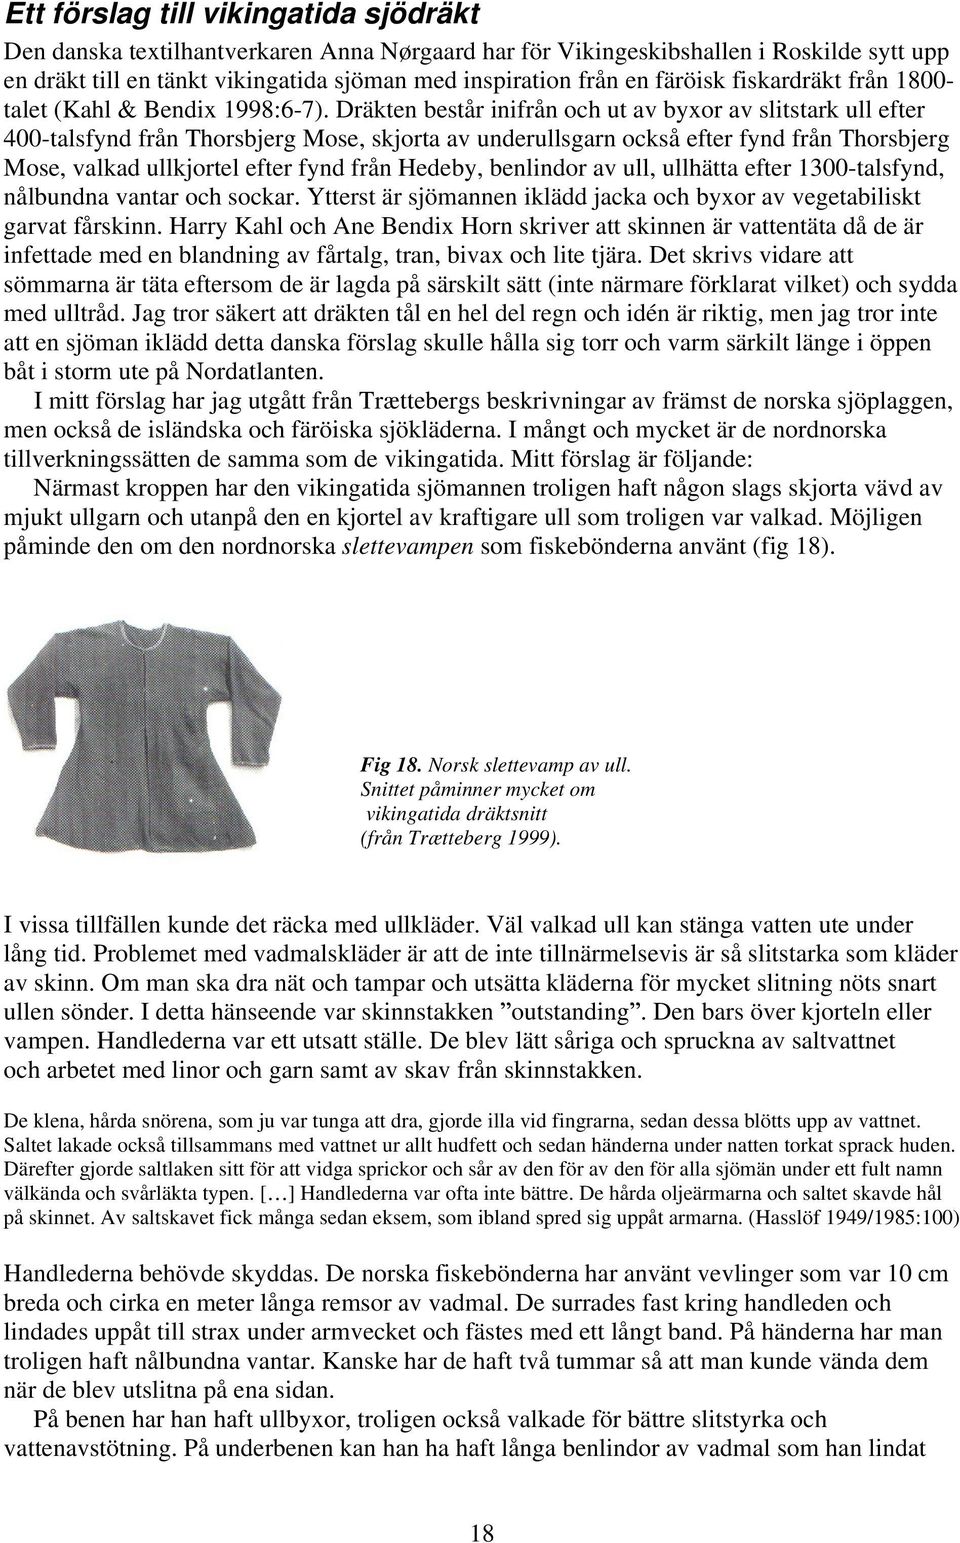 Dräkten består inifrån och ut av byxor av slitstark ull efter 400-talsfynd från Thorsbjerg Mose, skjorta av underullsgarn också efter fynd från Thorsbjerg Mose, valkad ullkjortel efter fynd från